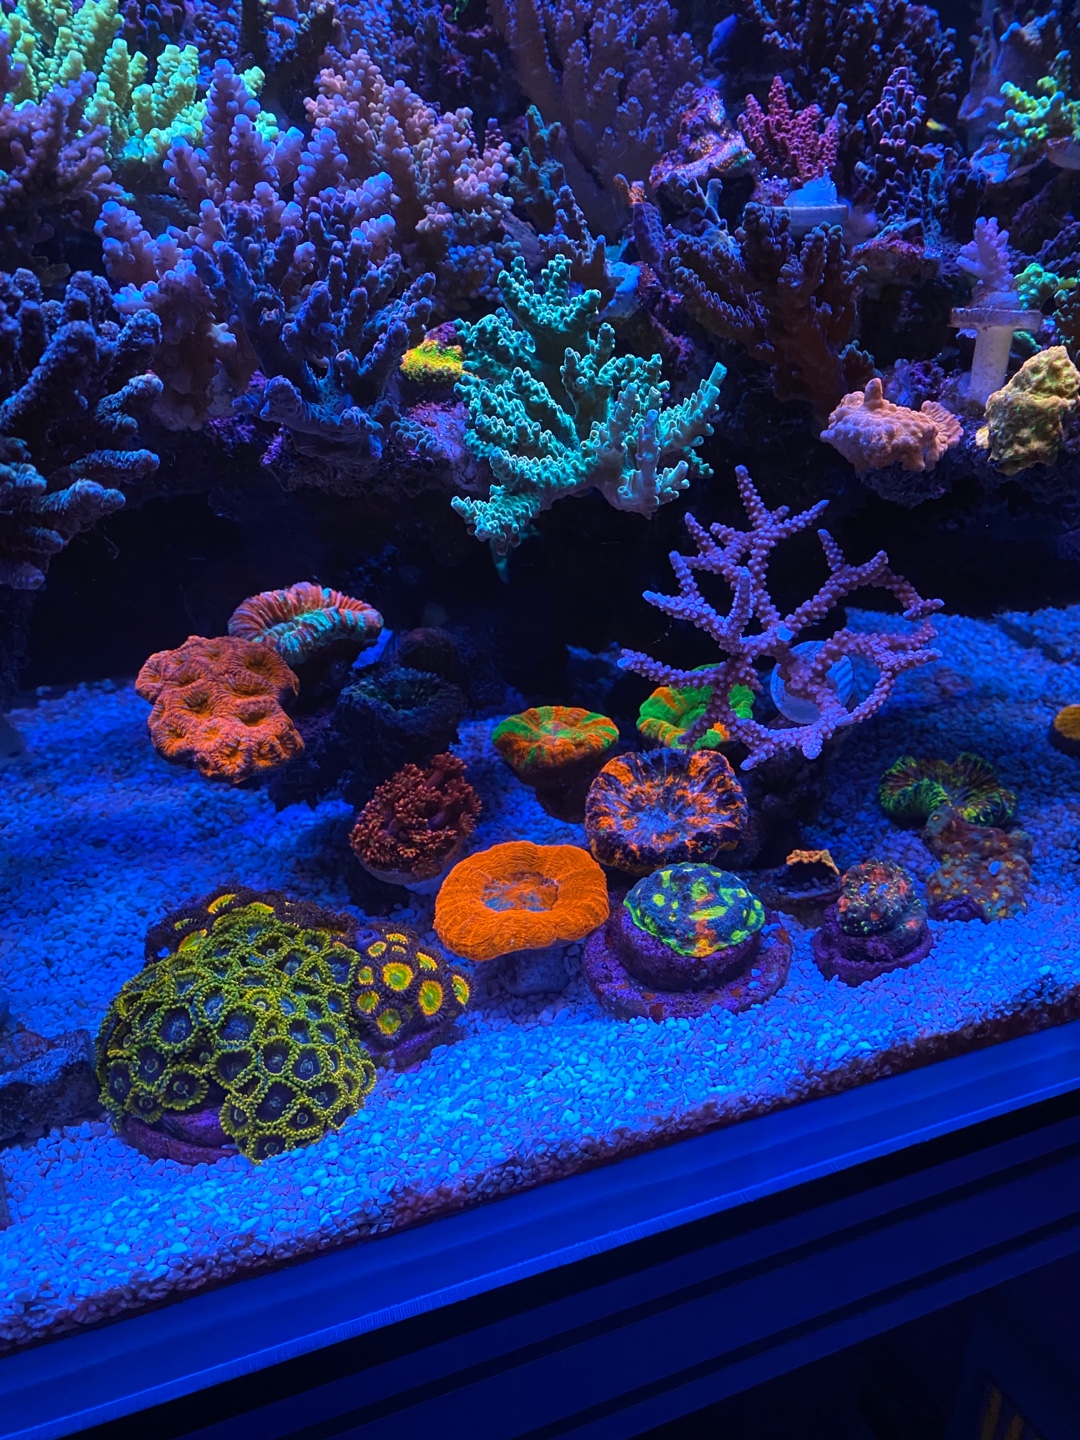 ที่ดีที่สุด-แนวปะการังพิพิธภัณฑ์สัตว์น้ำ-led-light-20224